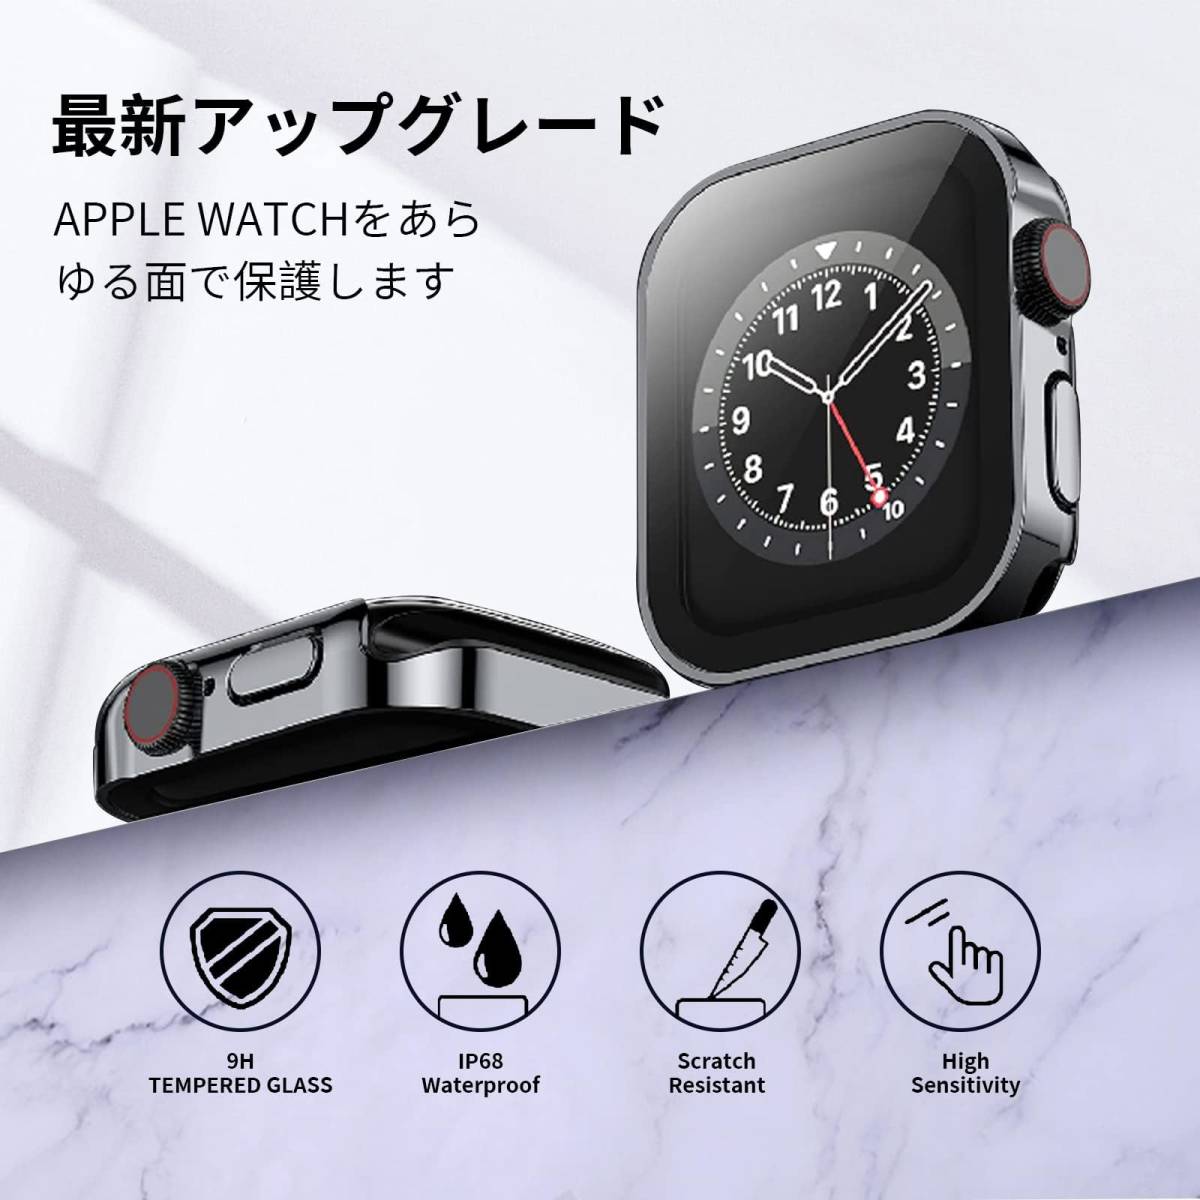 【新着商品】用ケース 44mm 防水ケース Watch 3D直角エッジデザイン Apple Watch アップルウォッチ 防水用 _画像5